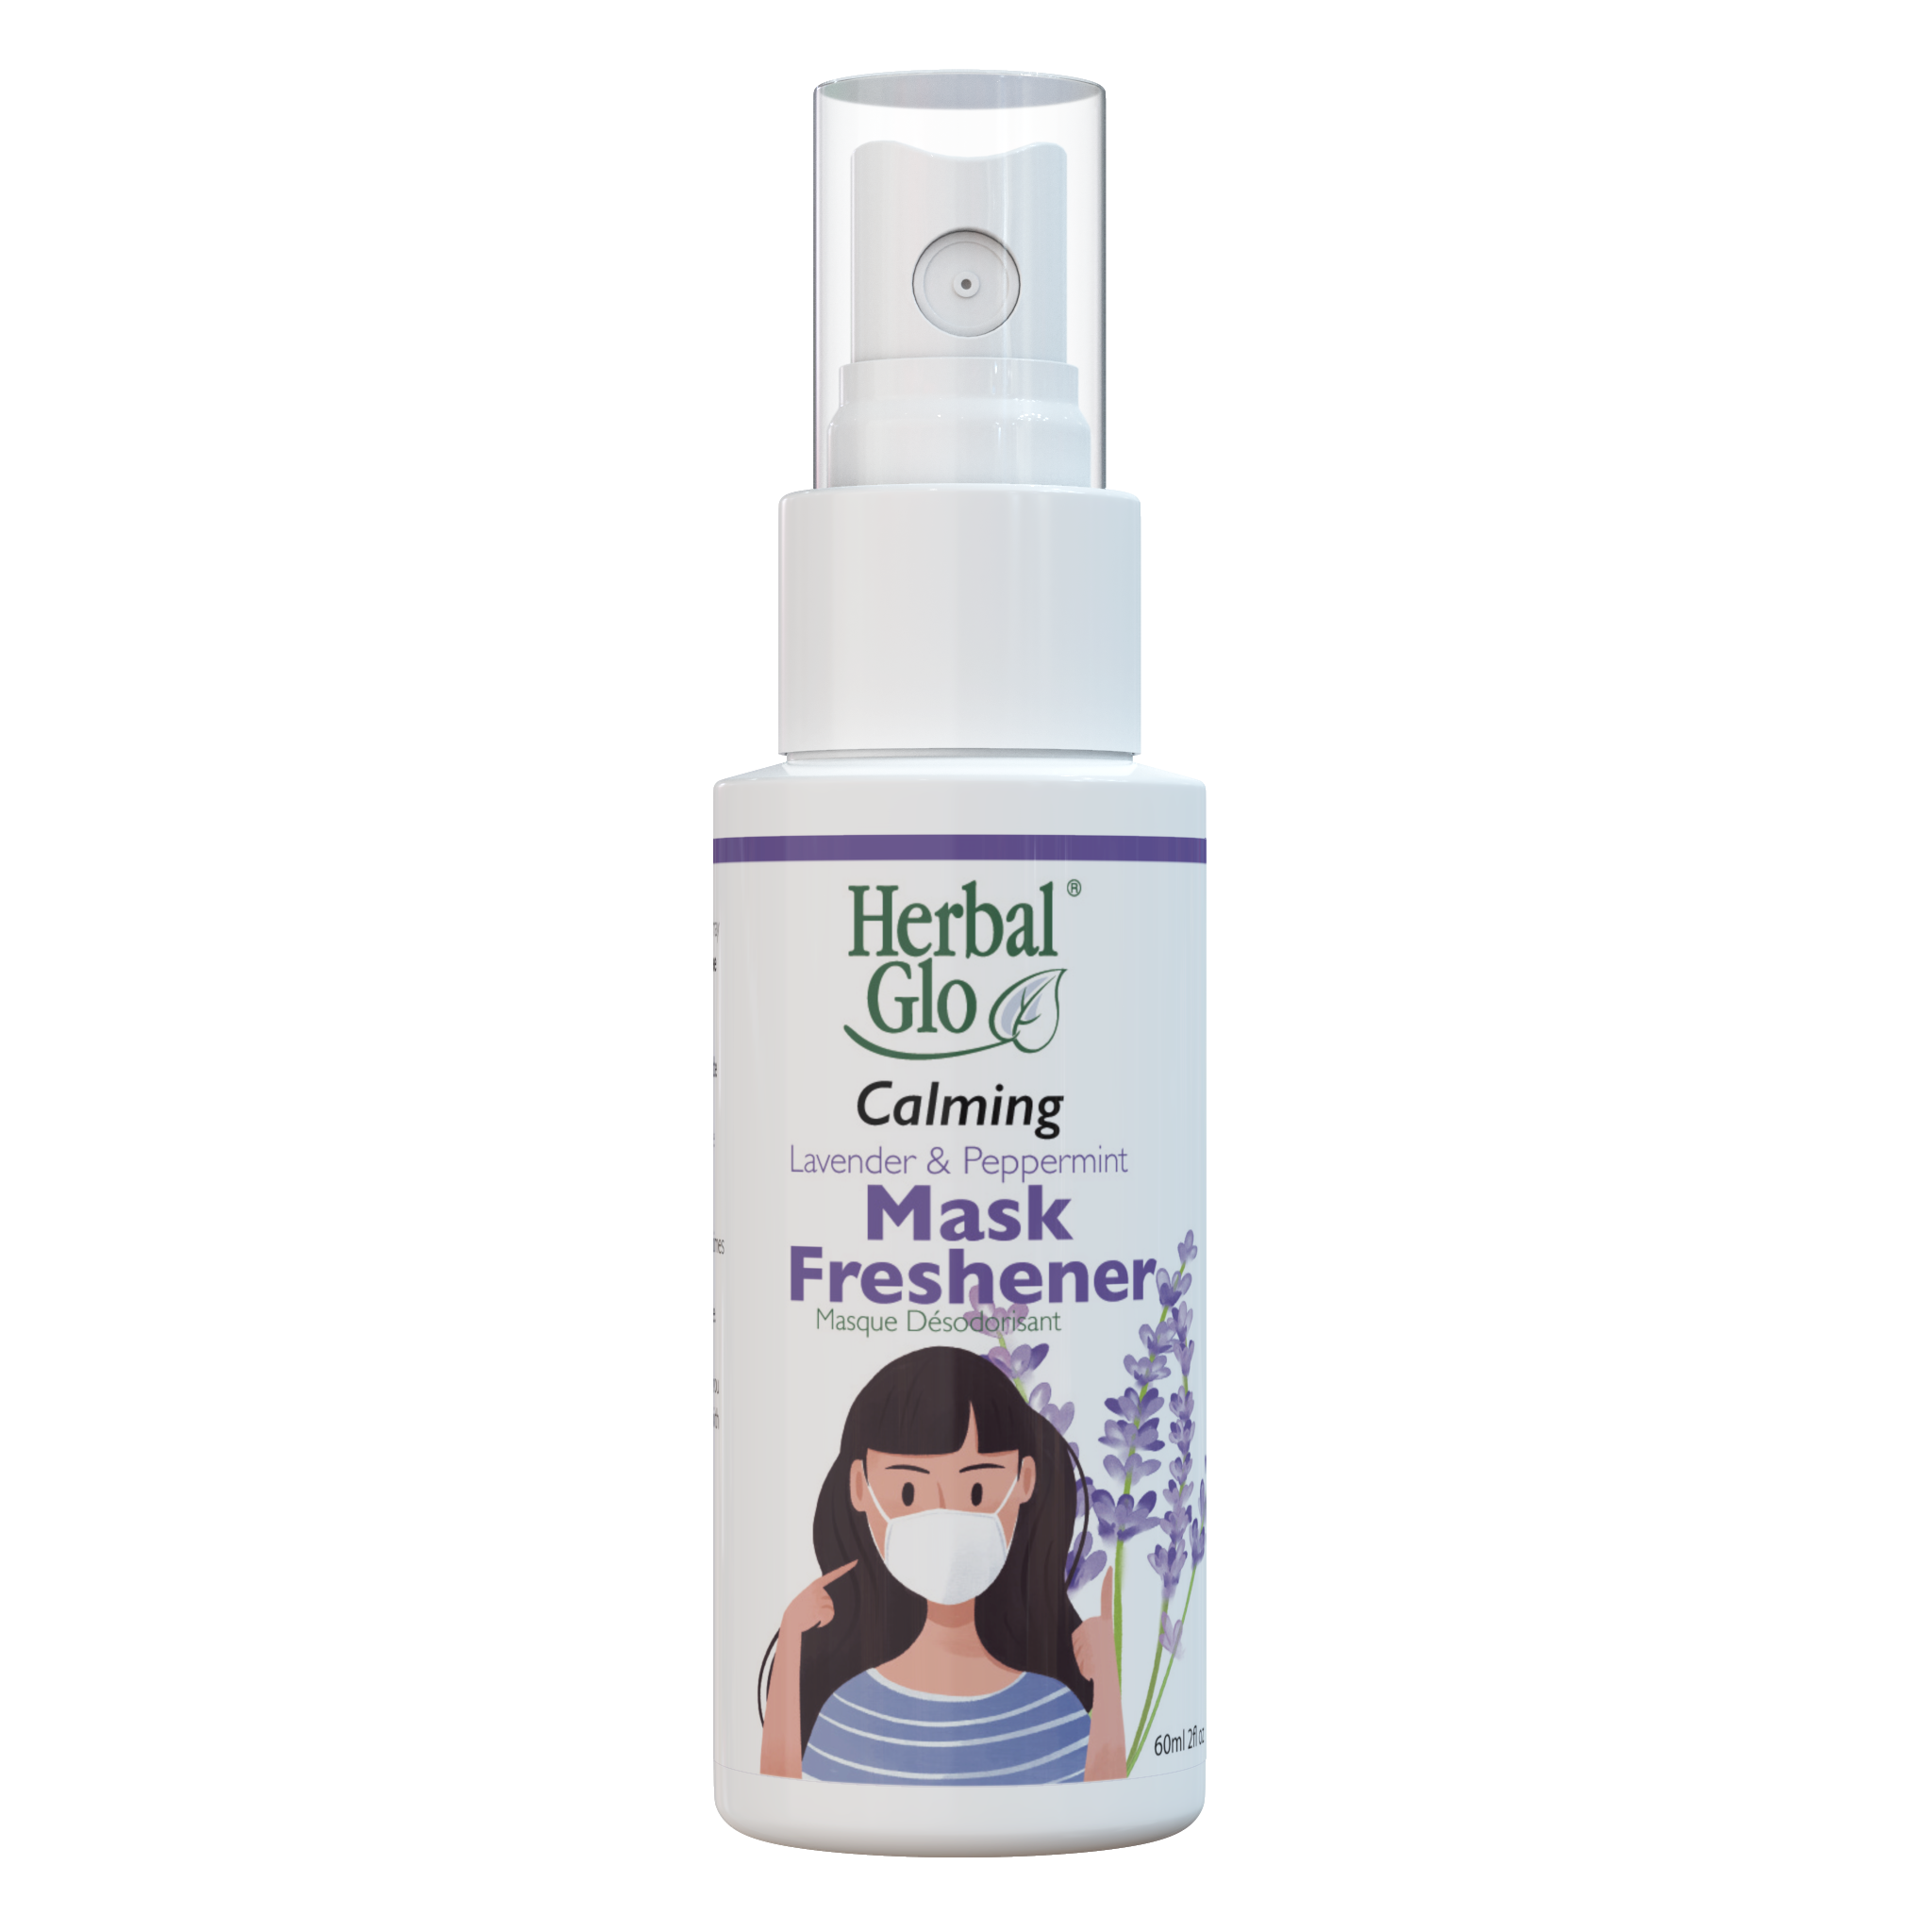 Calming Mask Freshener Spray - 60 ML - Herbal Glo